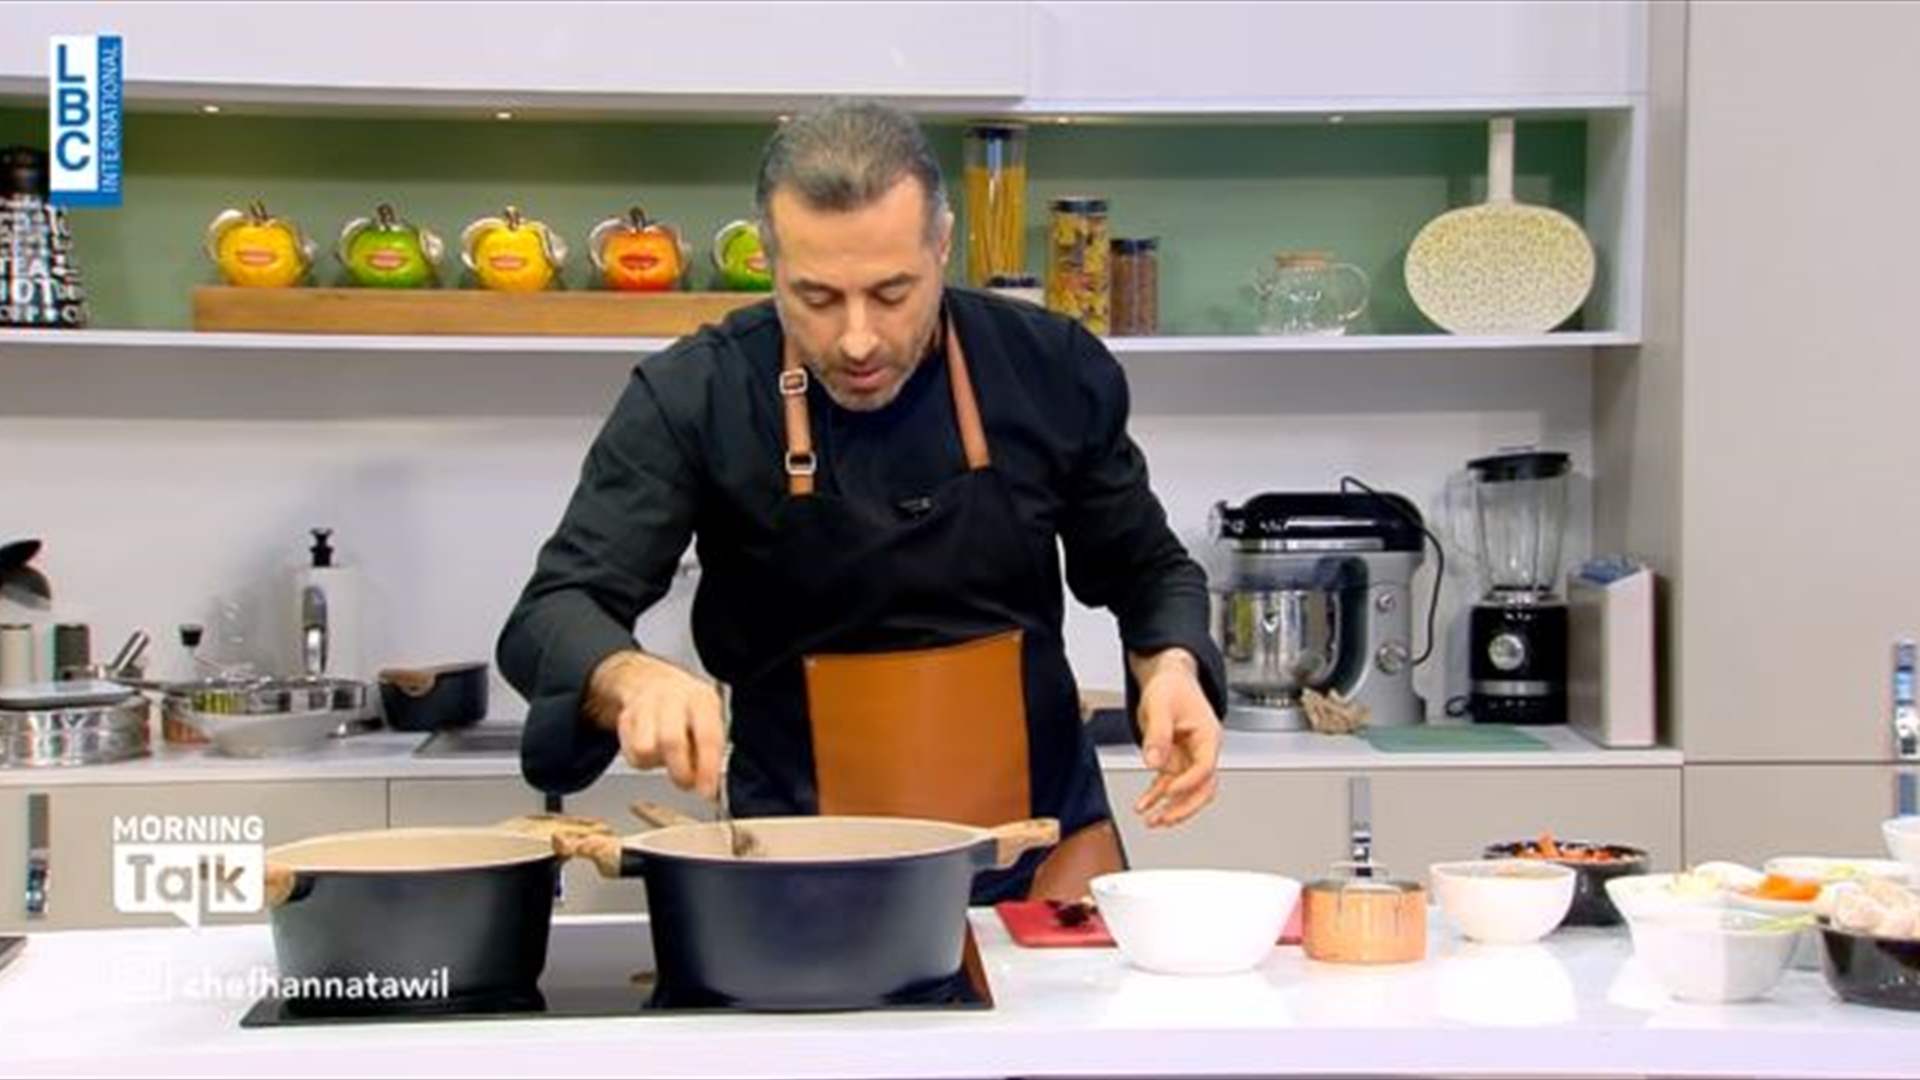 يخنة اللحم مع الخضار والبطاطا بوريه على الطريقة اللبنانية... كيف تحضّرون الوصفة بخطوات ومكوّنات بسيطة؟ (فيديو)